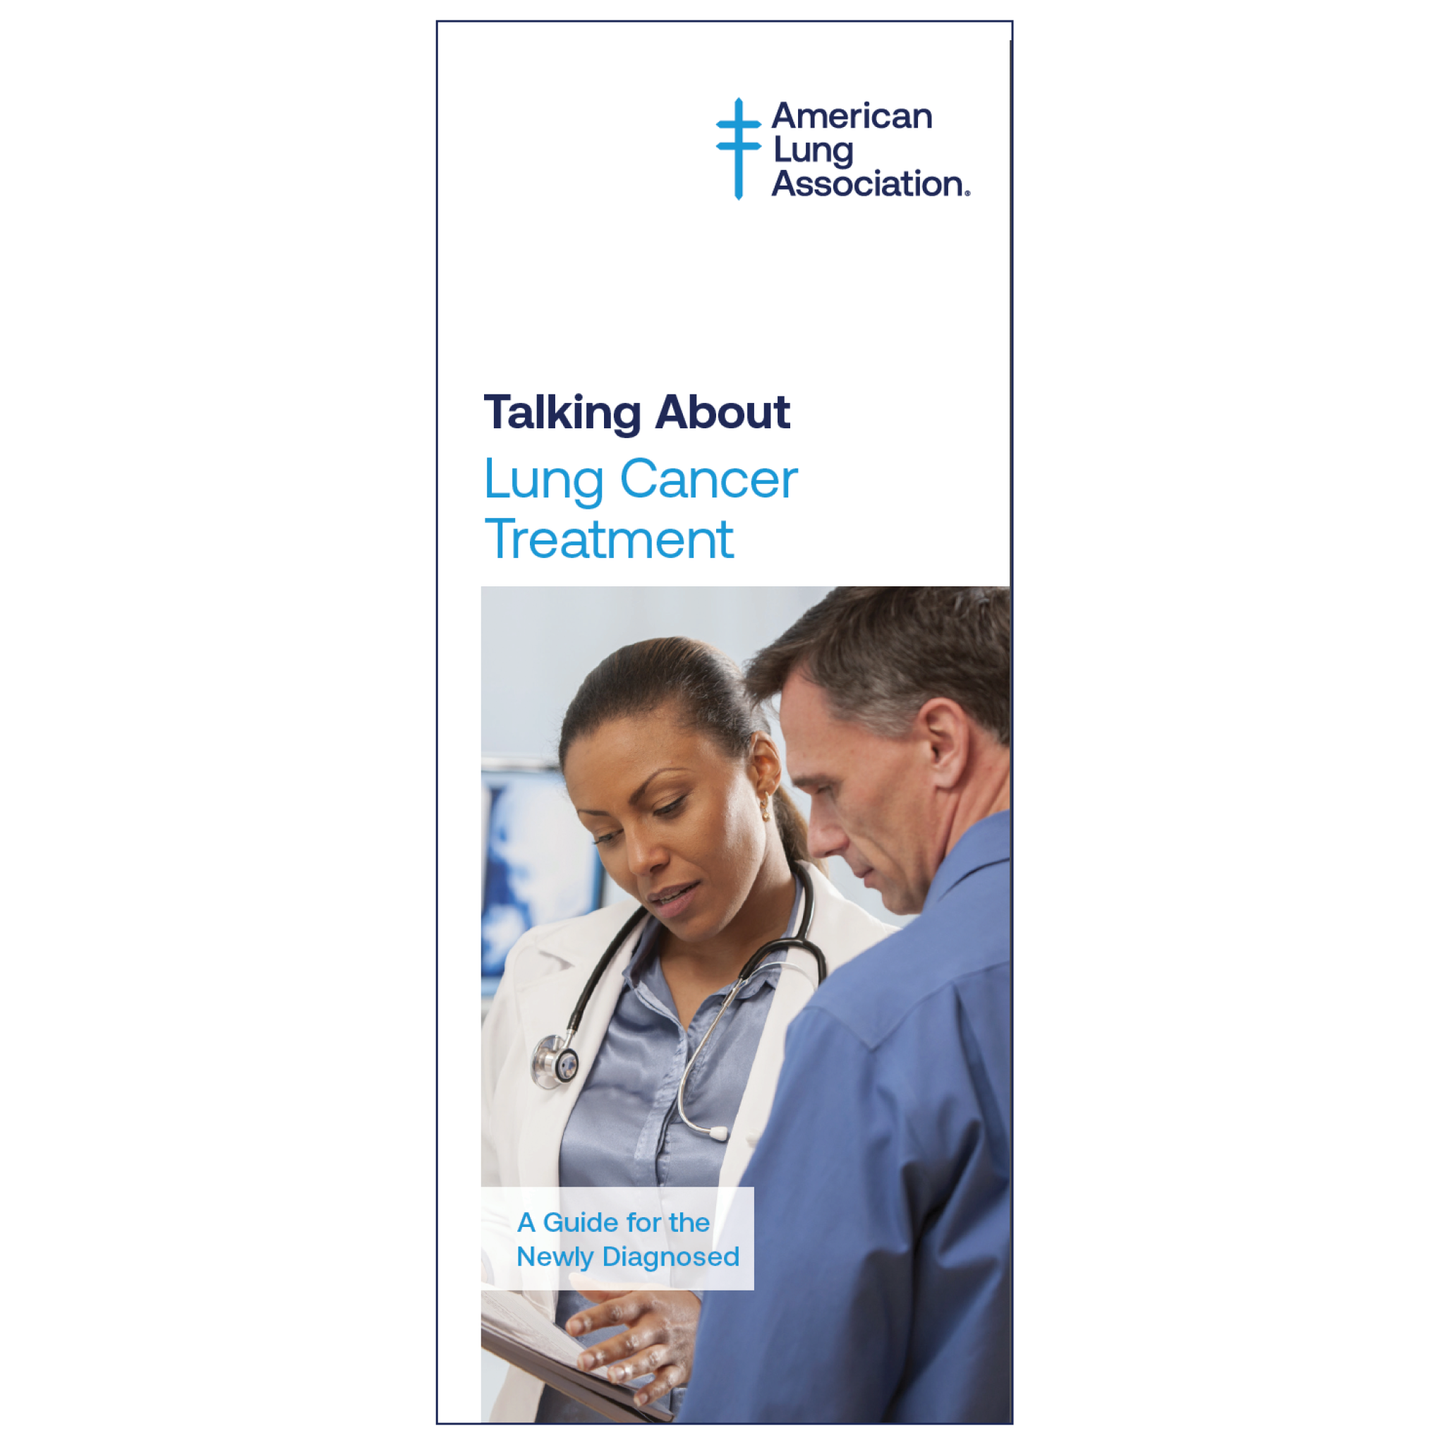 Hablando sobre el tratamiento del cáncer de pulmón